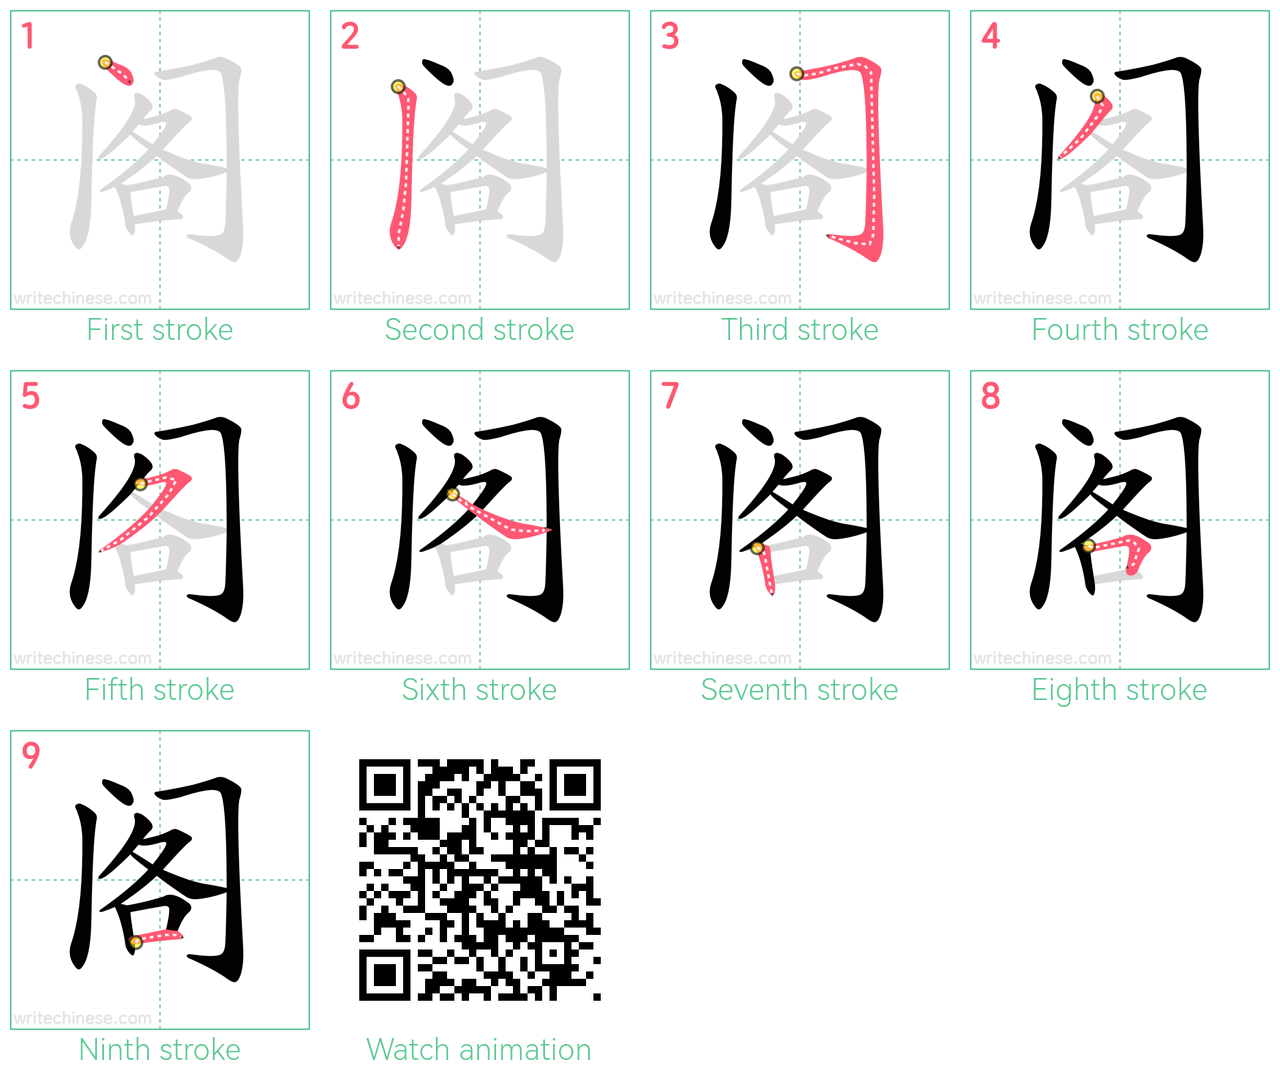 阁 step-by-step stroke order diagrams